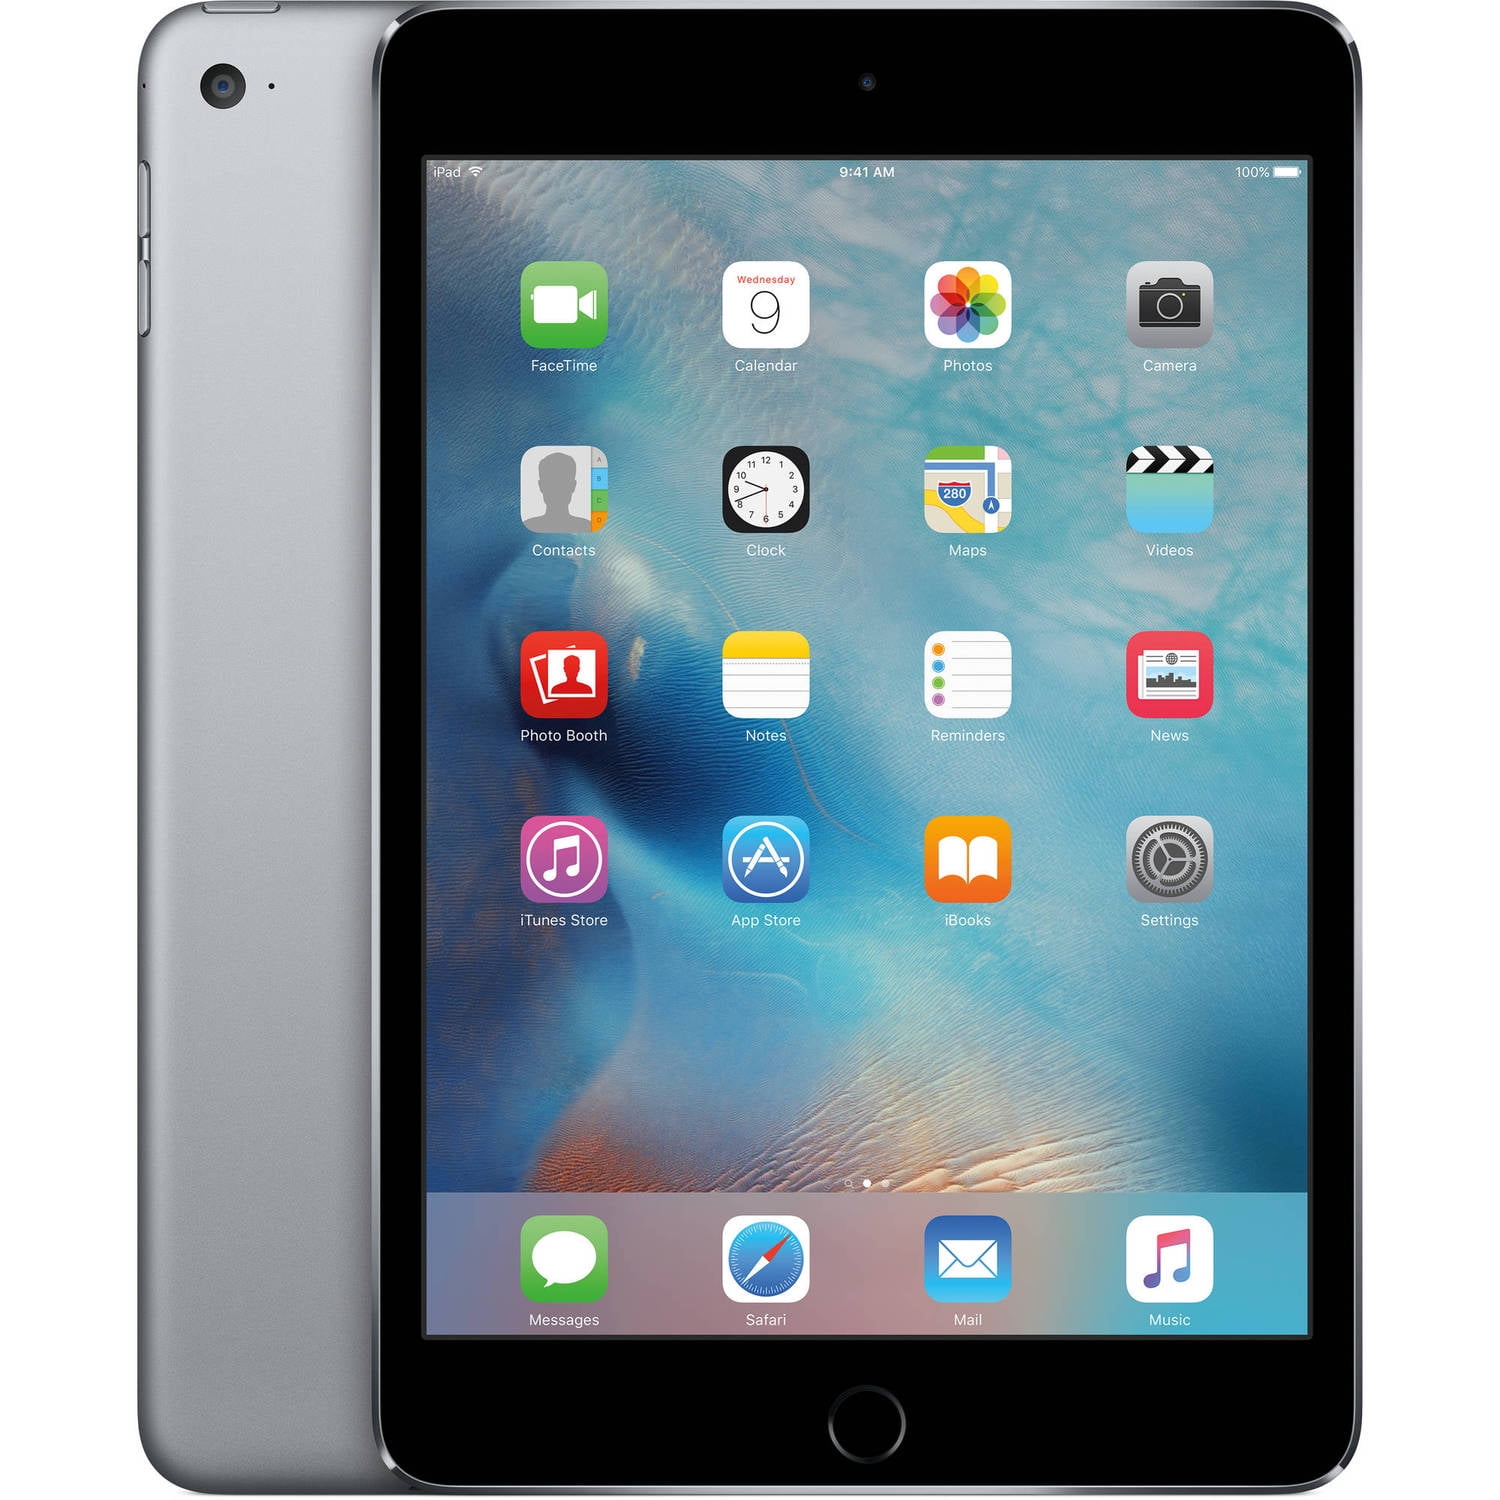 Apple iPad Mini 4th Gen 7.9" Tablet w/ Retina Display (64GB, Space Gray